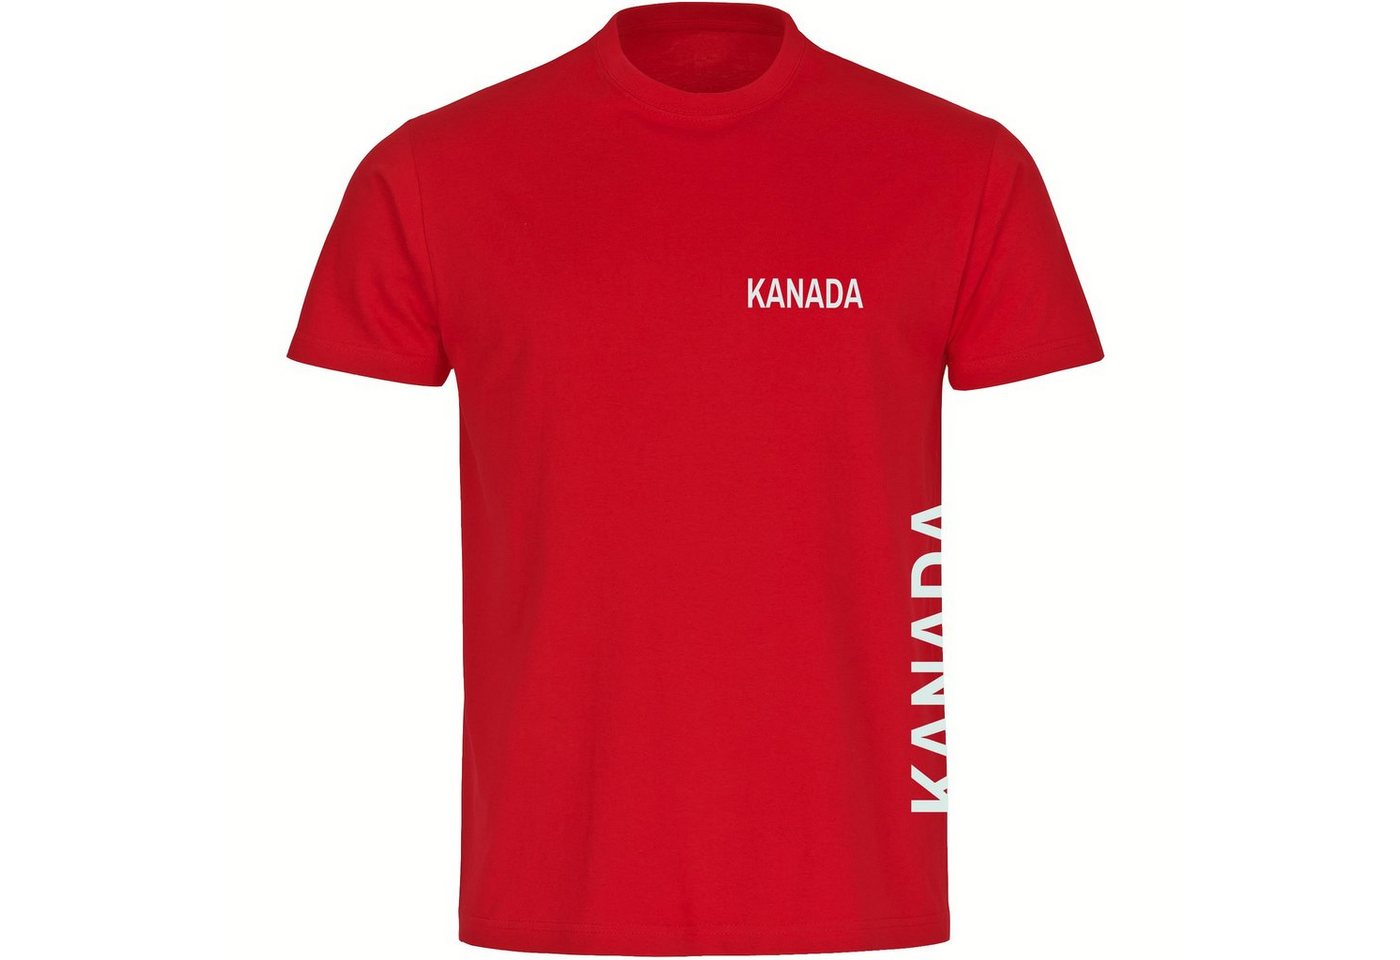 multifanshop T-Shirt Herren Kanada - Brust & Seite - Männer von multifanshop